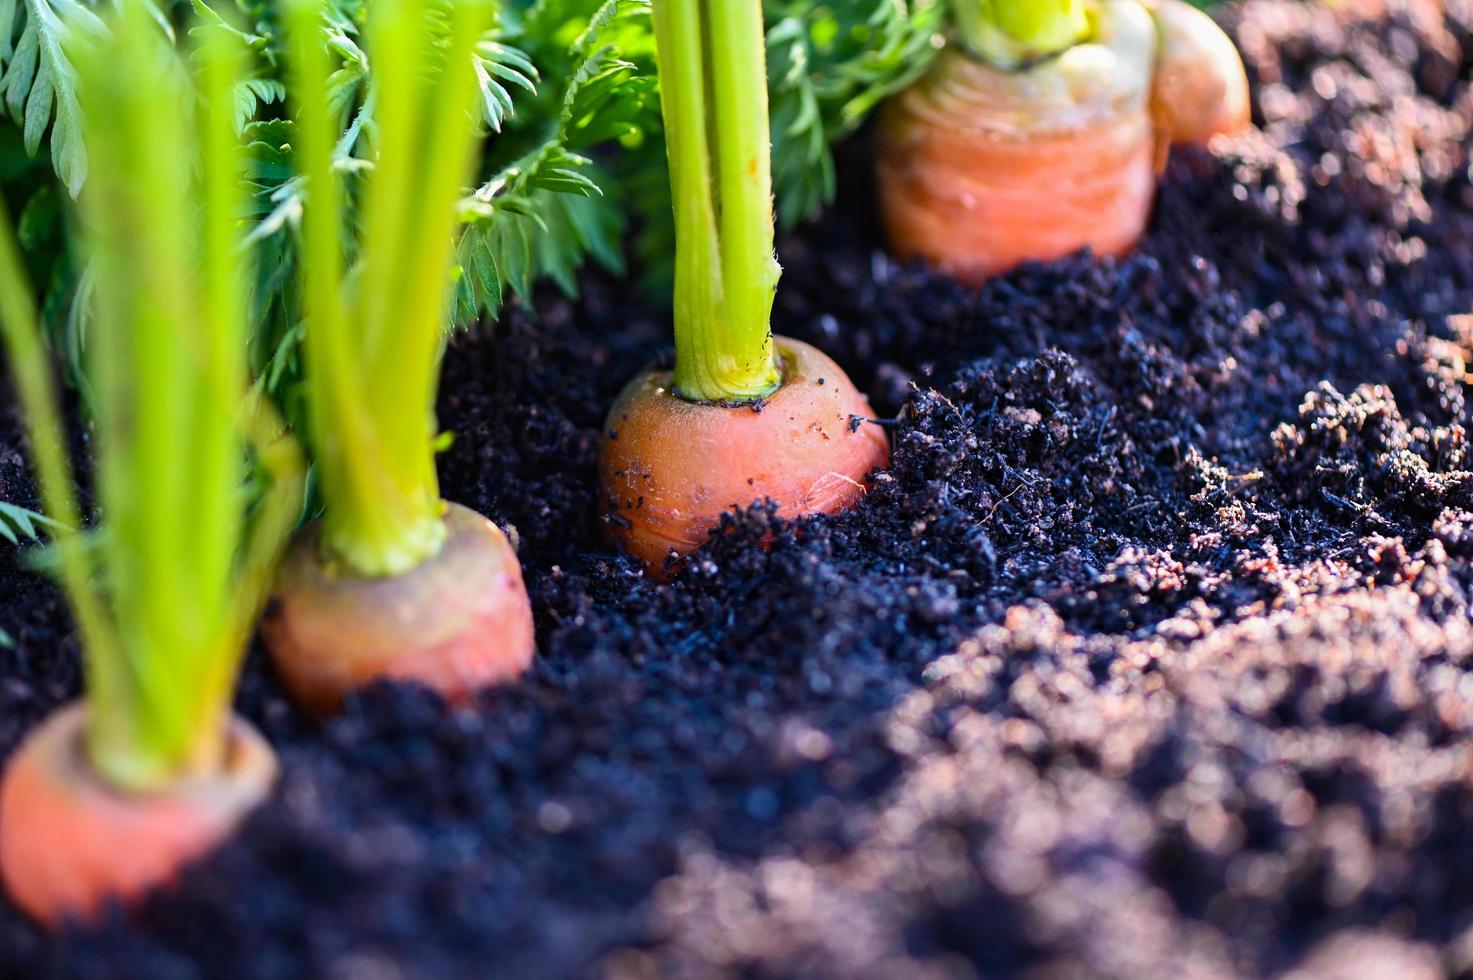 carottes poussant dans le sol ferme biologique carotte au sol , carottes fraîches poussant dans le champ de carottes légumes pousse dans le jardin récolte produit agricole nature photo